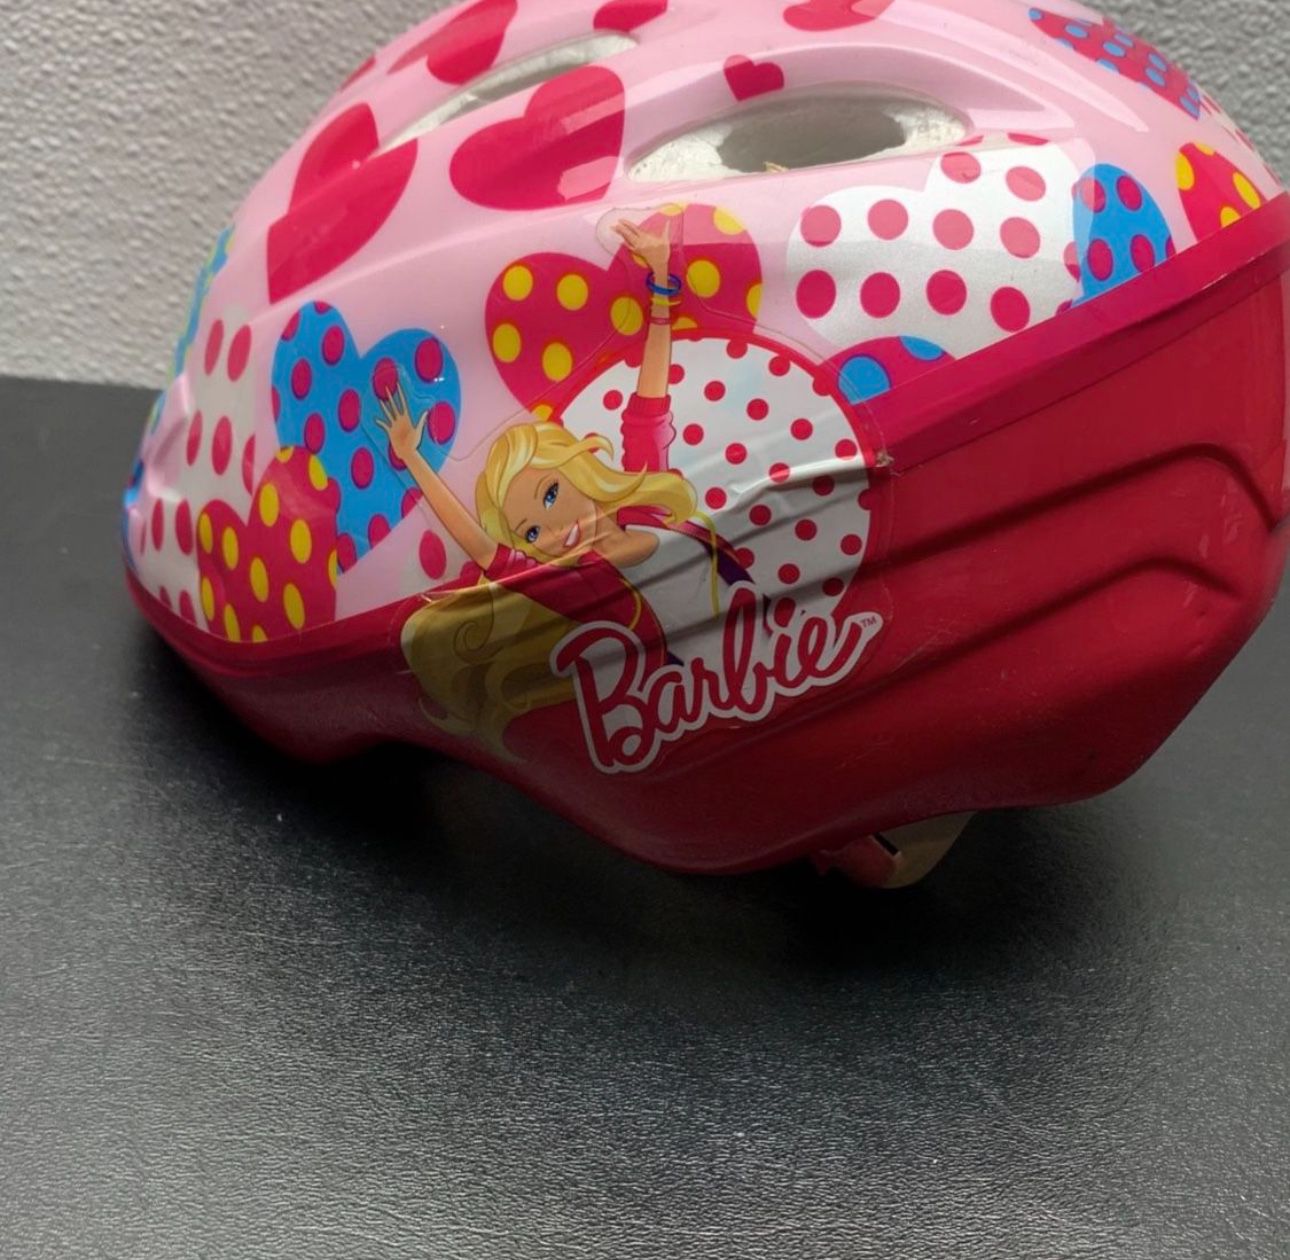 Barbie Bike Helmet For Little Girl